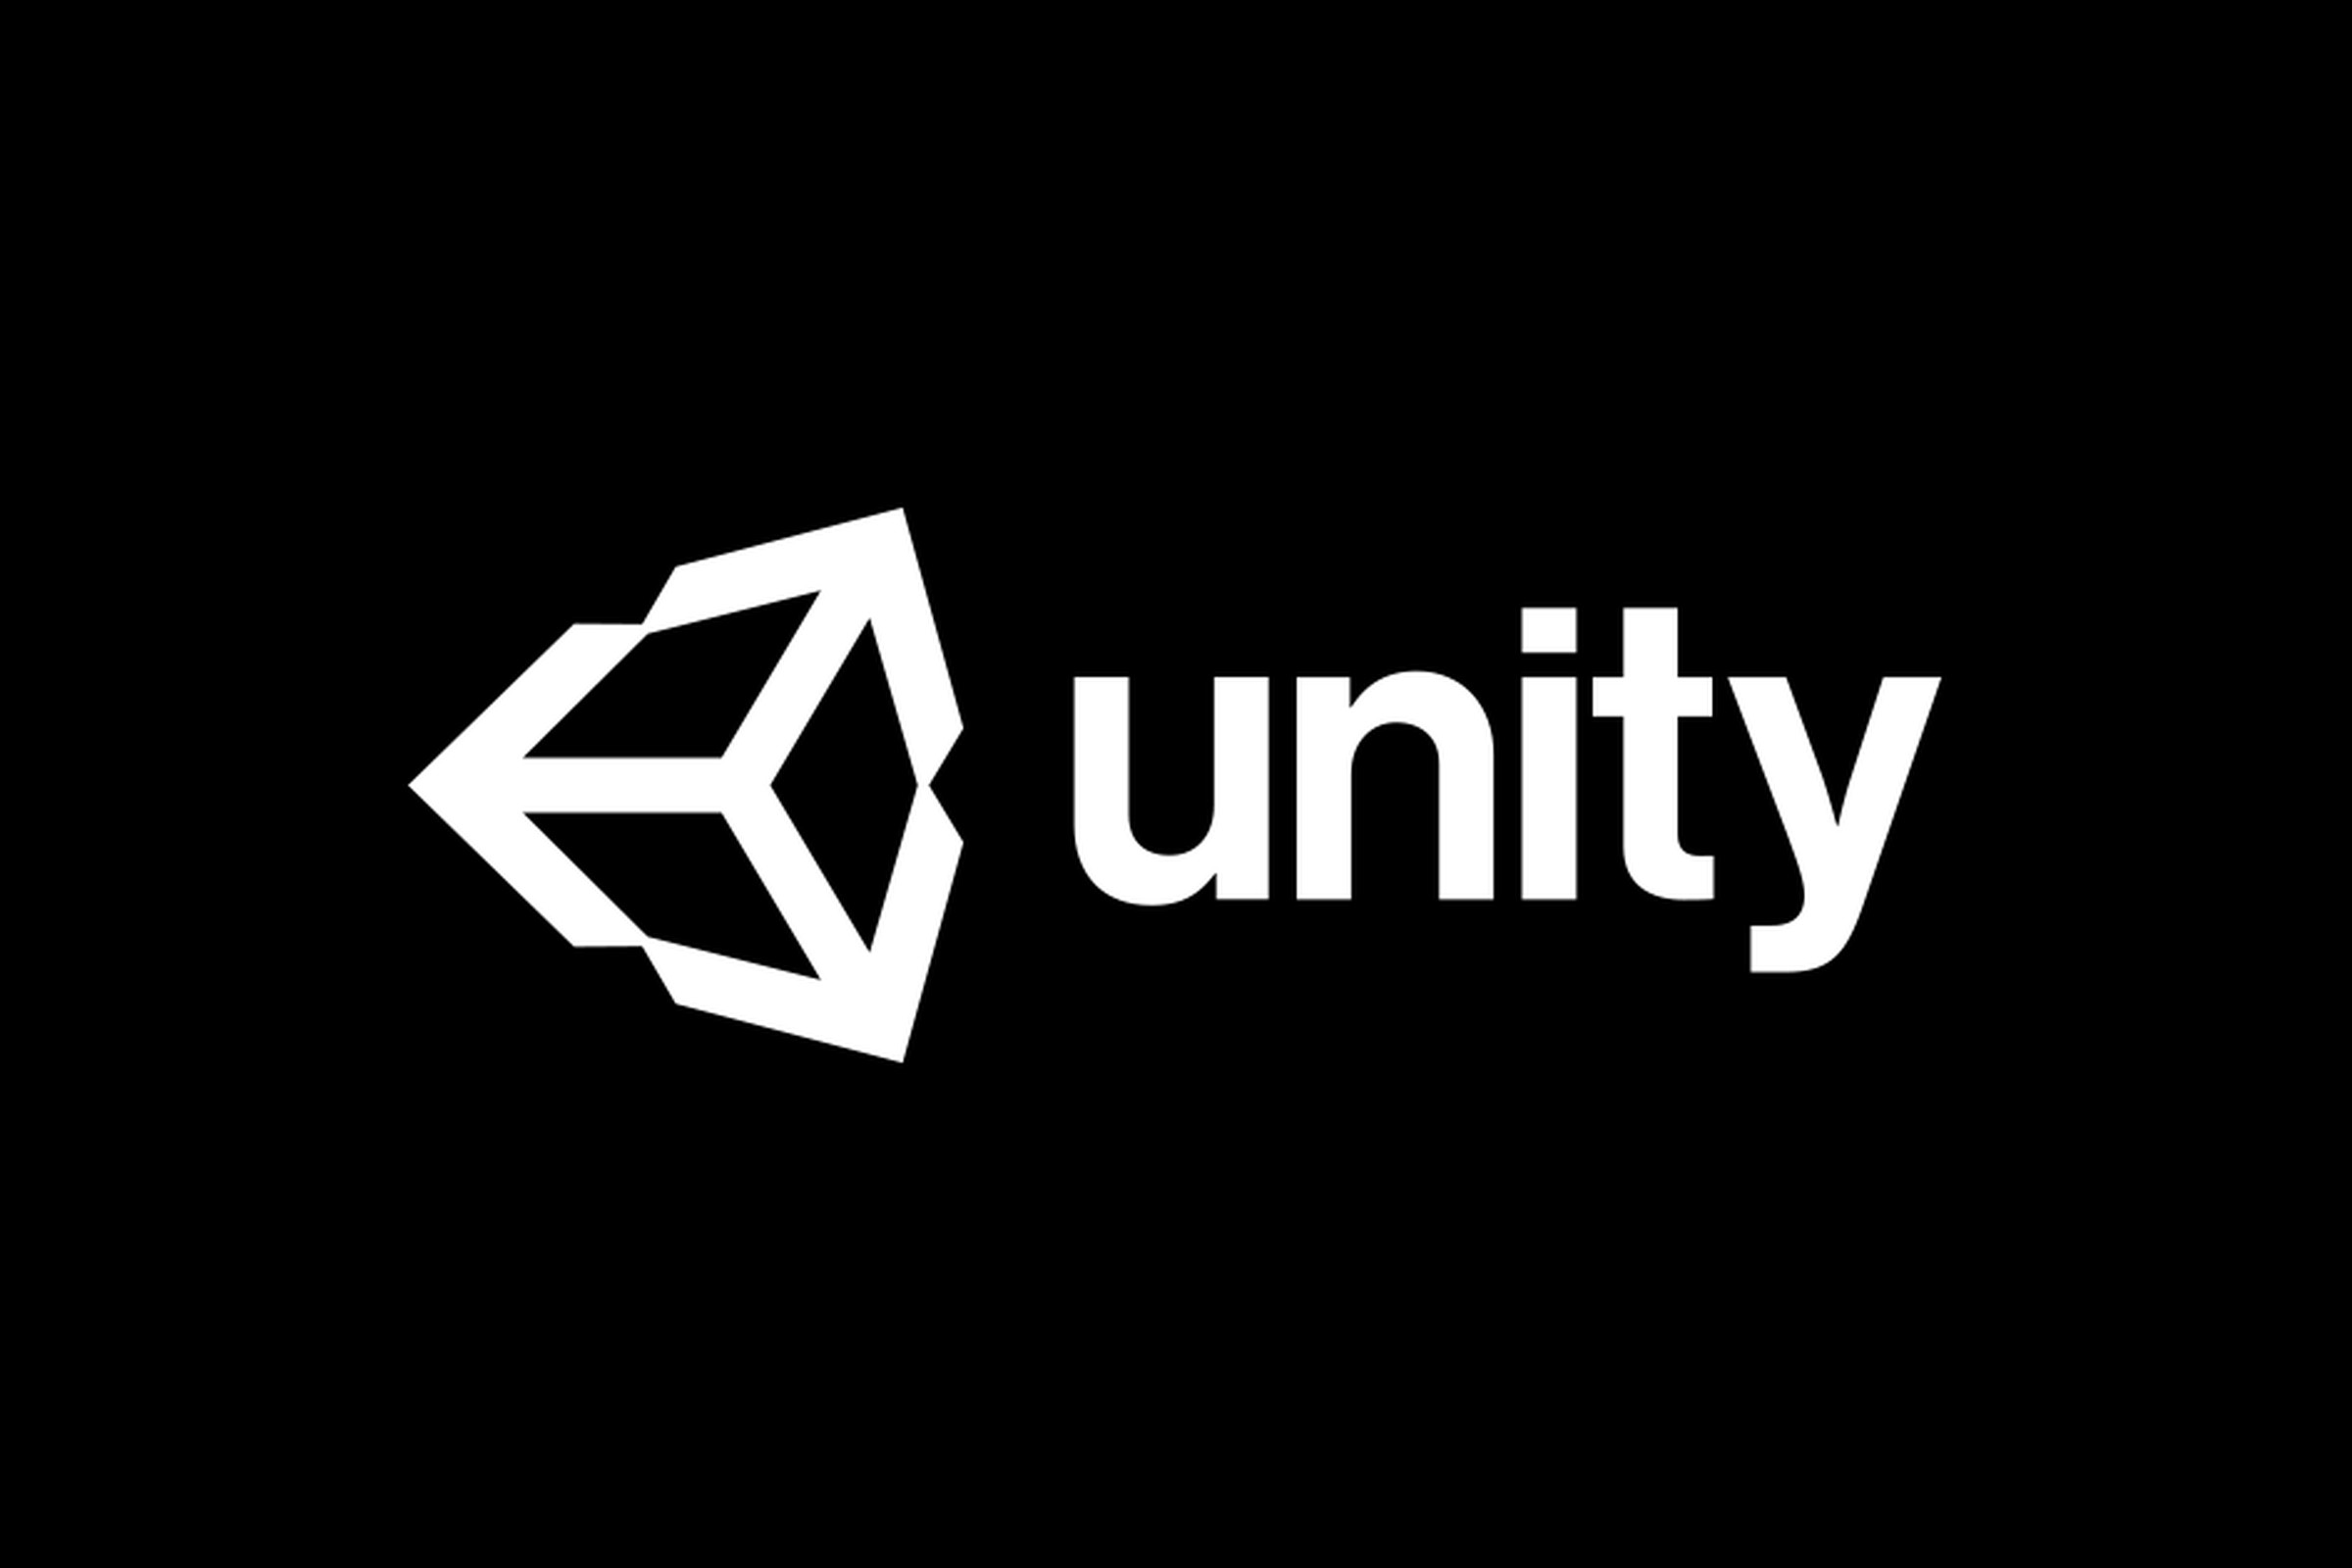 Image of Unity’s company logo.